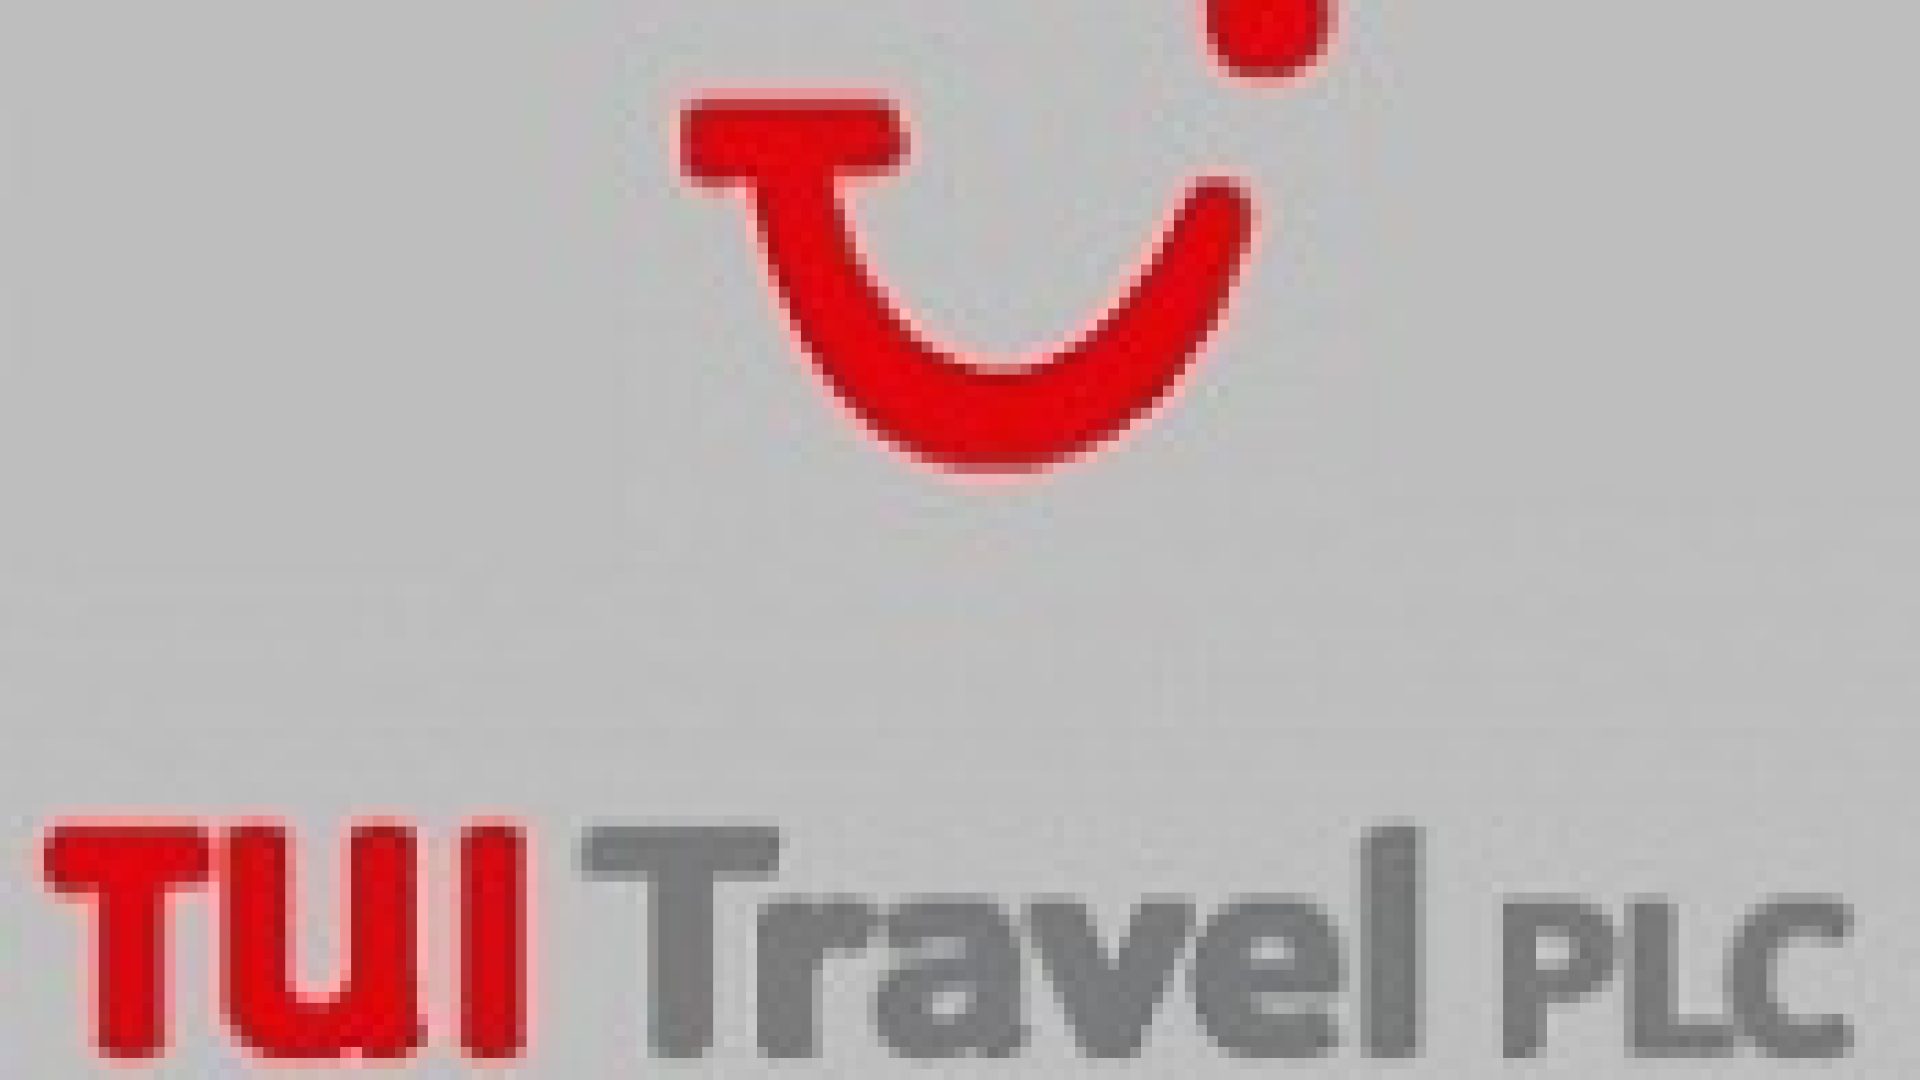 452-cover-tui_travel_plc